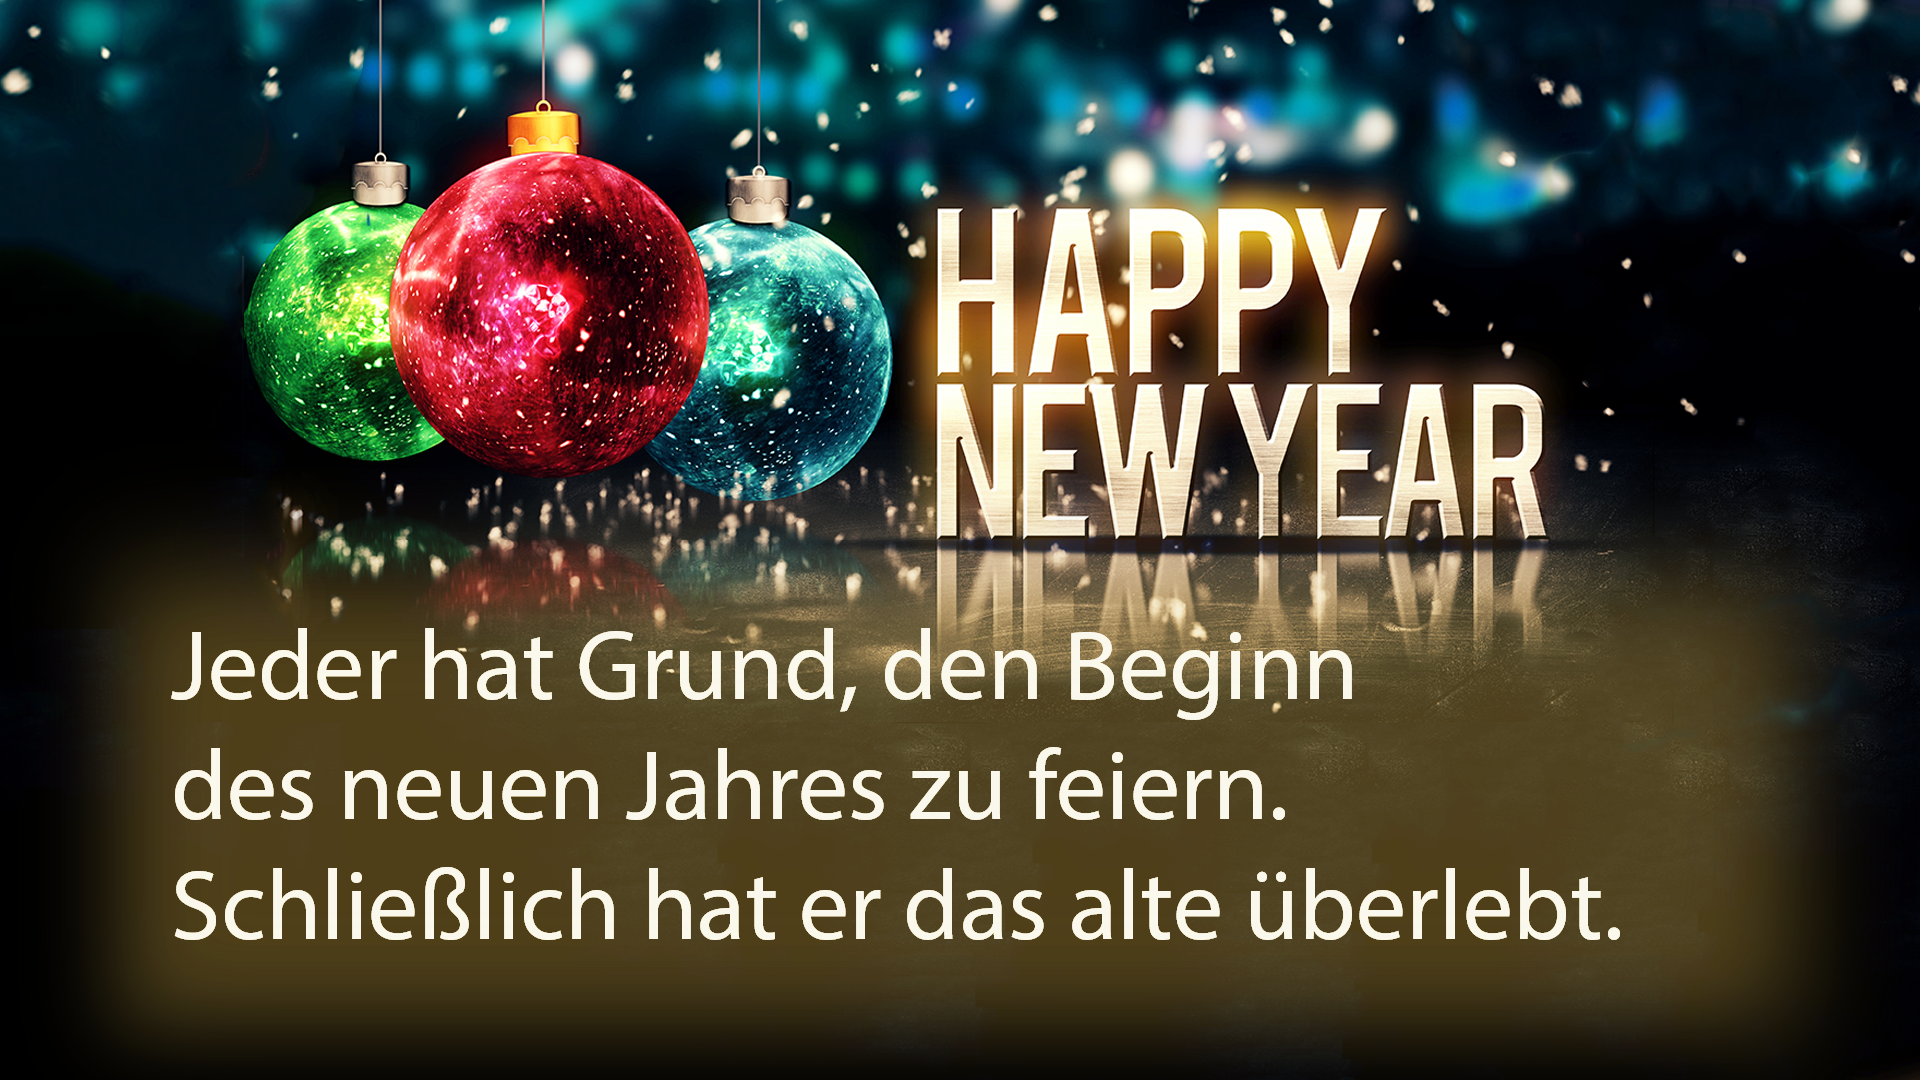 Silvester Spruche 2019 20 Die 34 Besten Neujahrswunsche Fur Whatsapp Facebook Sms Neujahrswunsche Silvester Spruche Spruche Neues Jahr